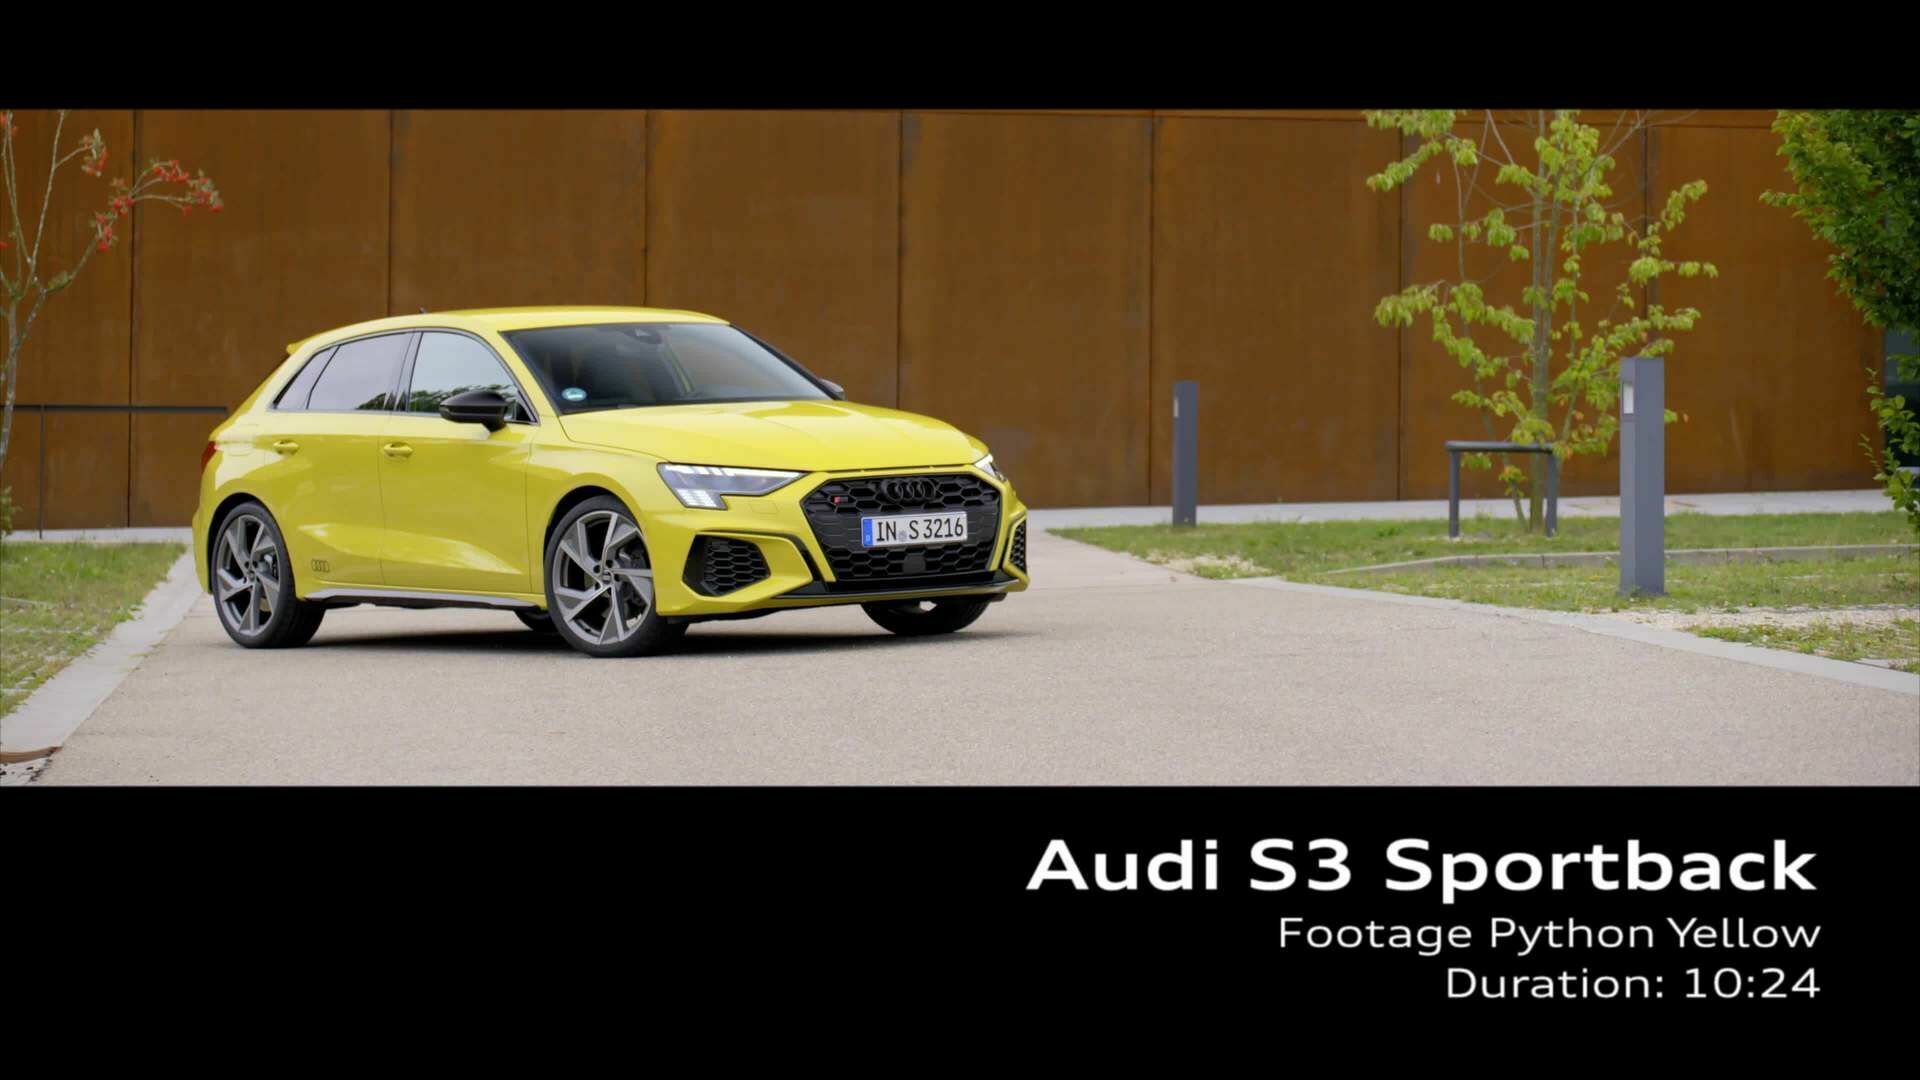 Footage: Audi S3 Sportback on location